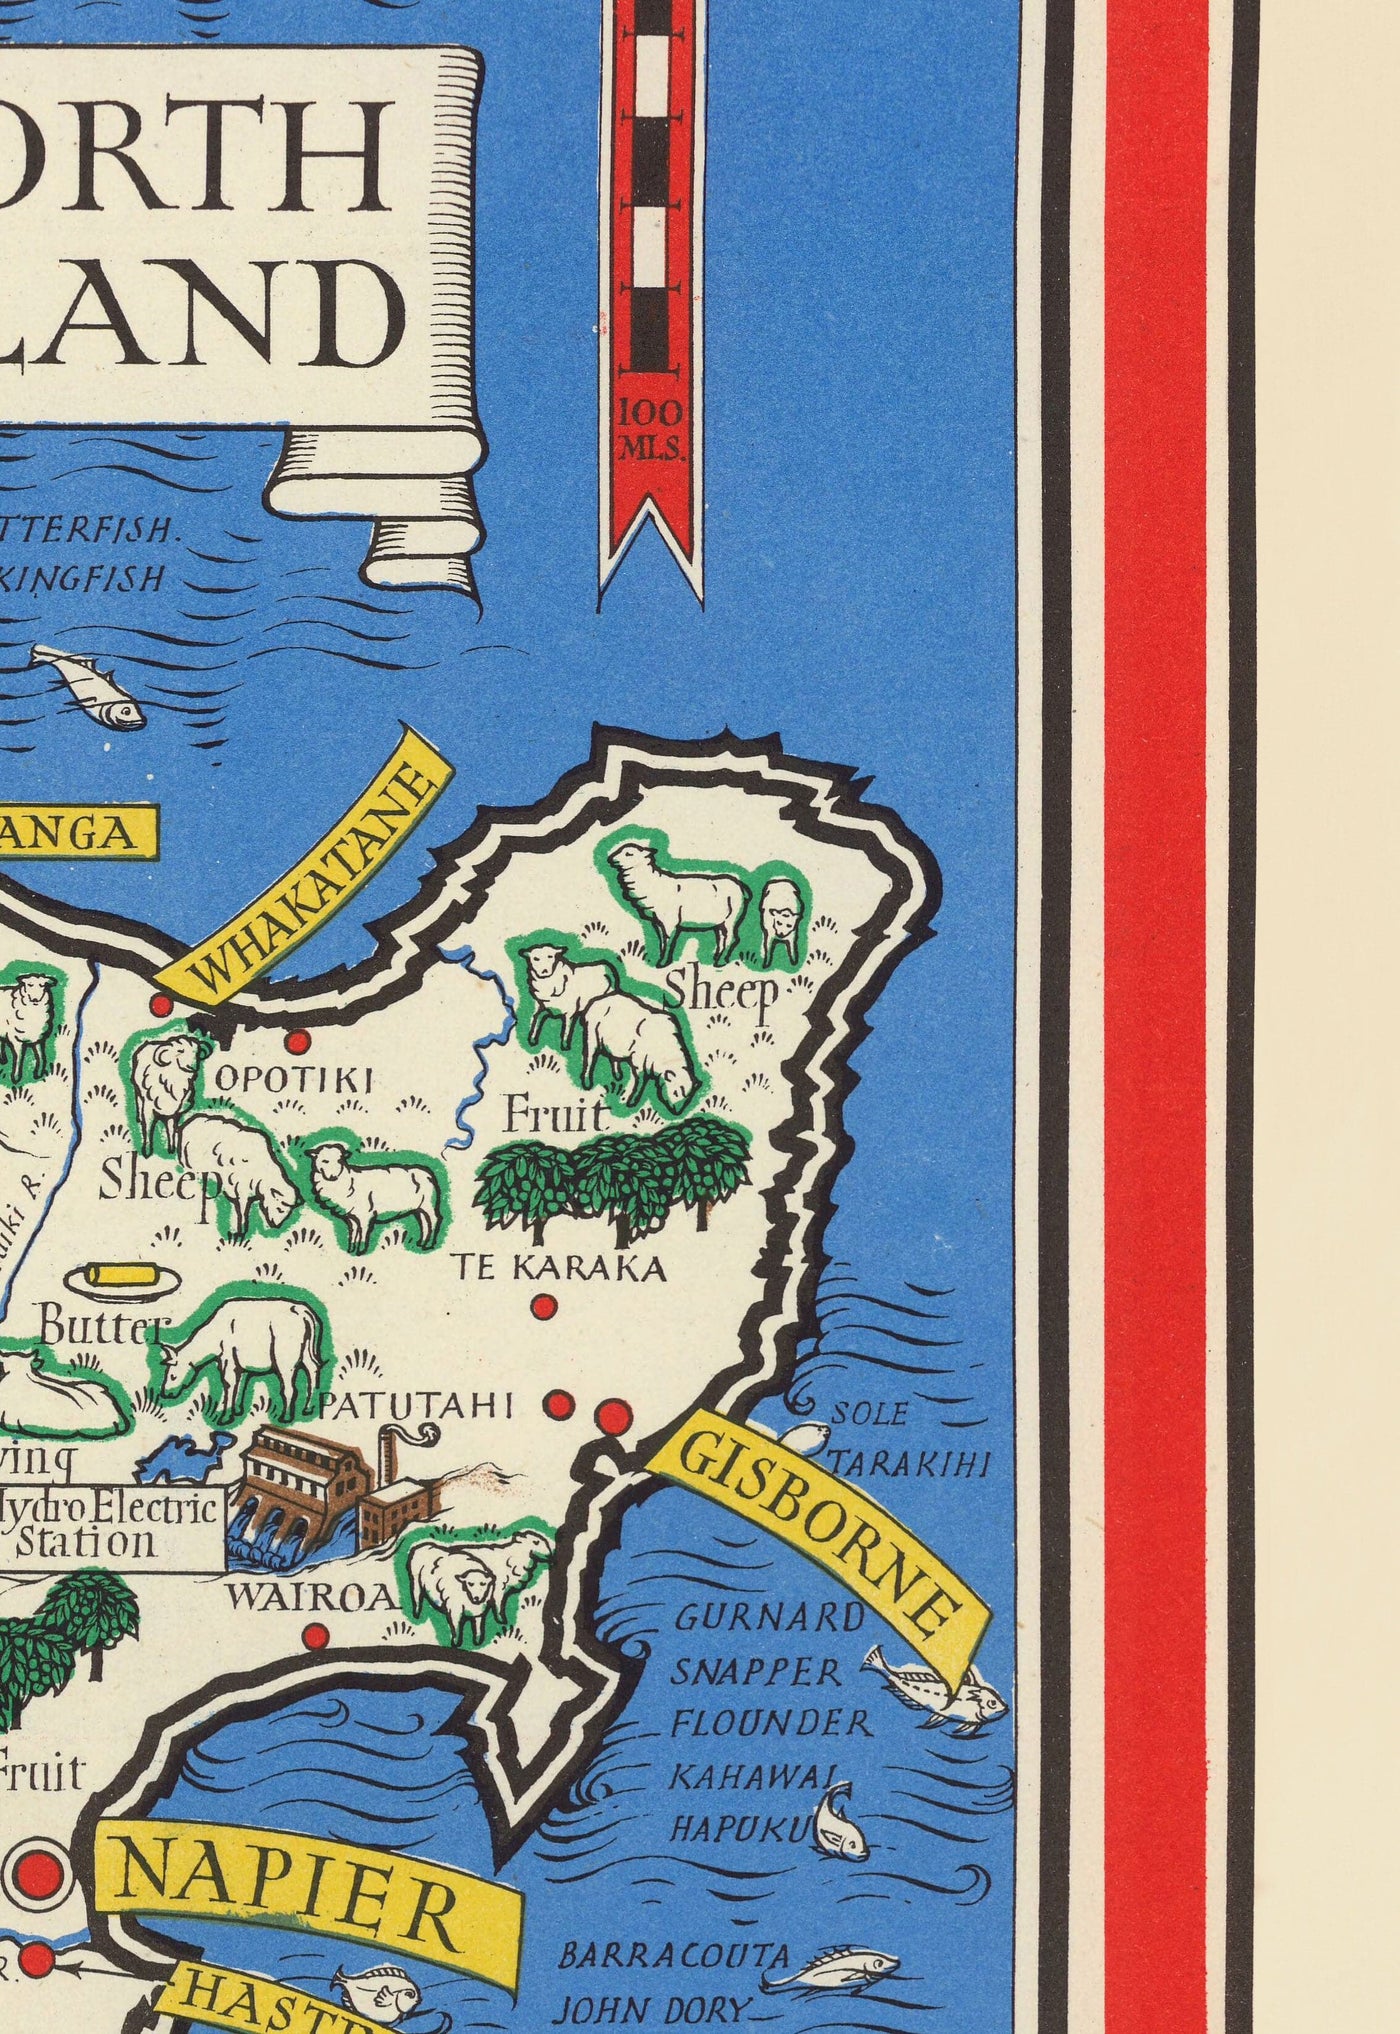 Viejo mapa de Nueva Zelanda, 1943 por Max Gill - Mapa de la Segunda Guerra Mundial del Imperio Británico colonial 2